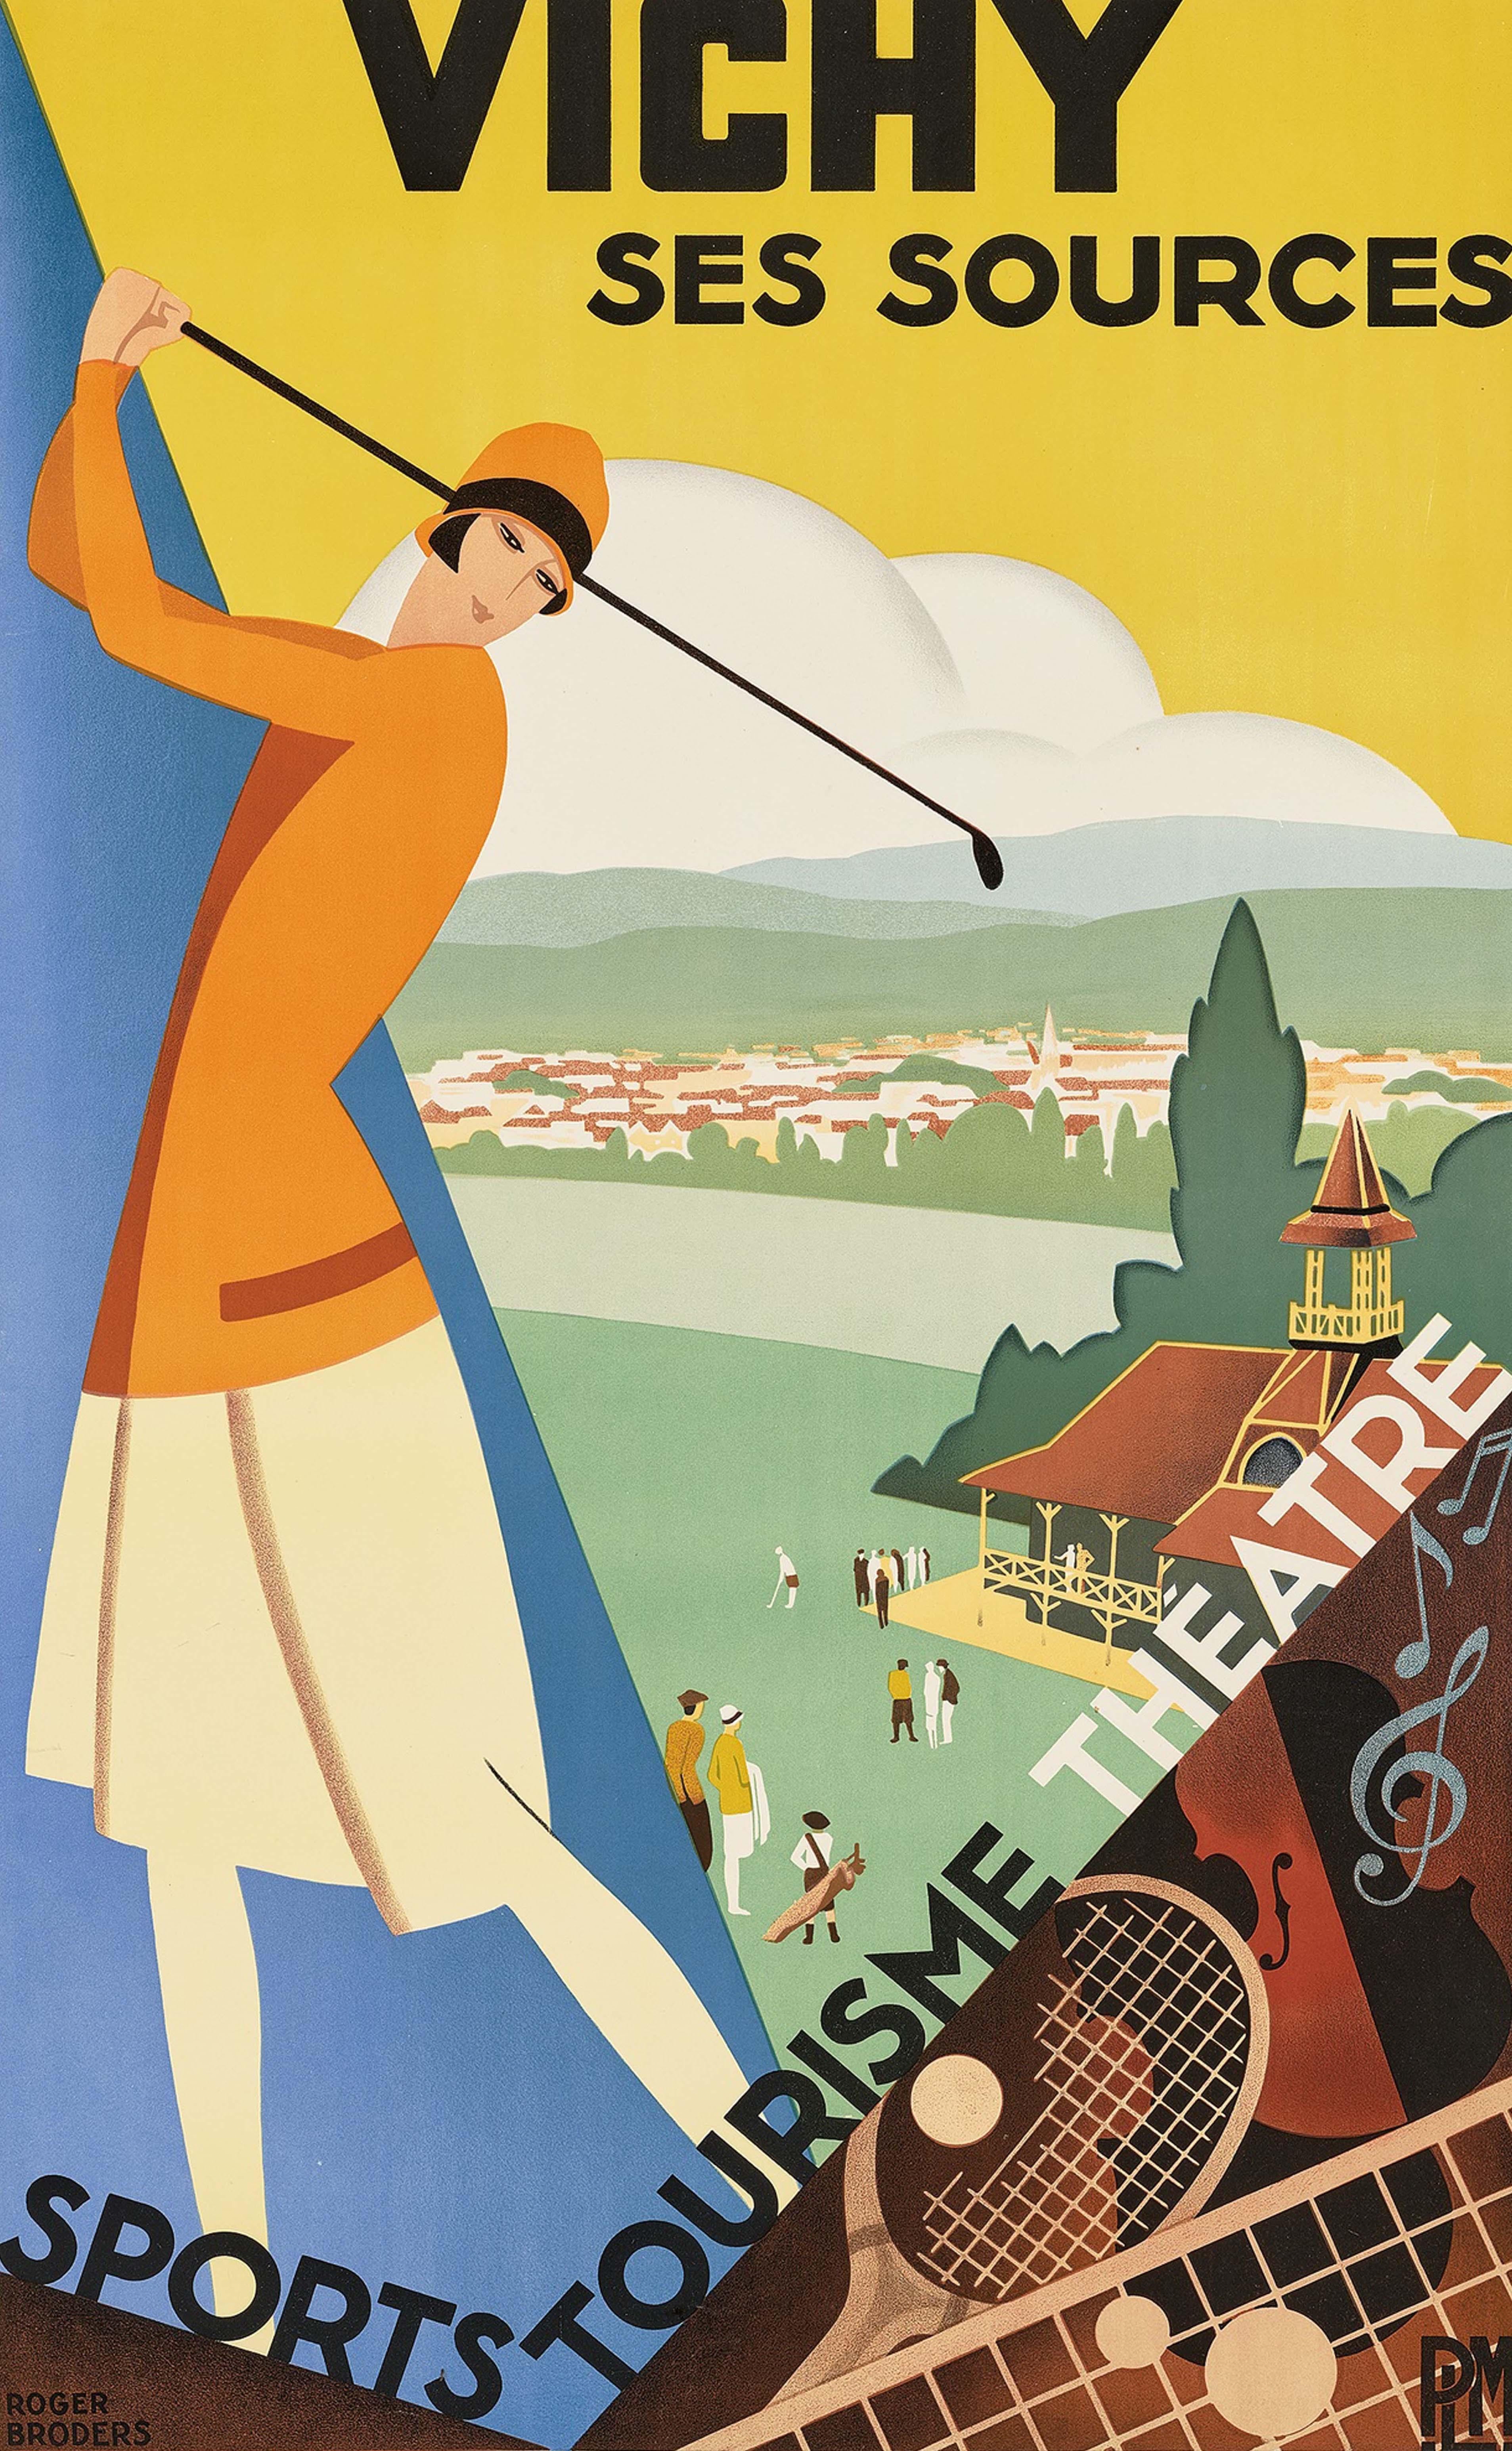 Original Vintage PLM Paris Lyon Mediterranee Railway Travel Poster Vichy Golf - Print by Roger Broders